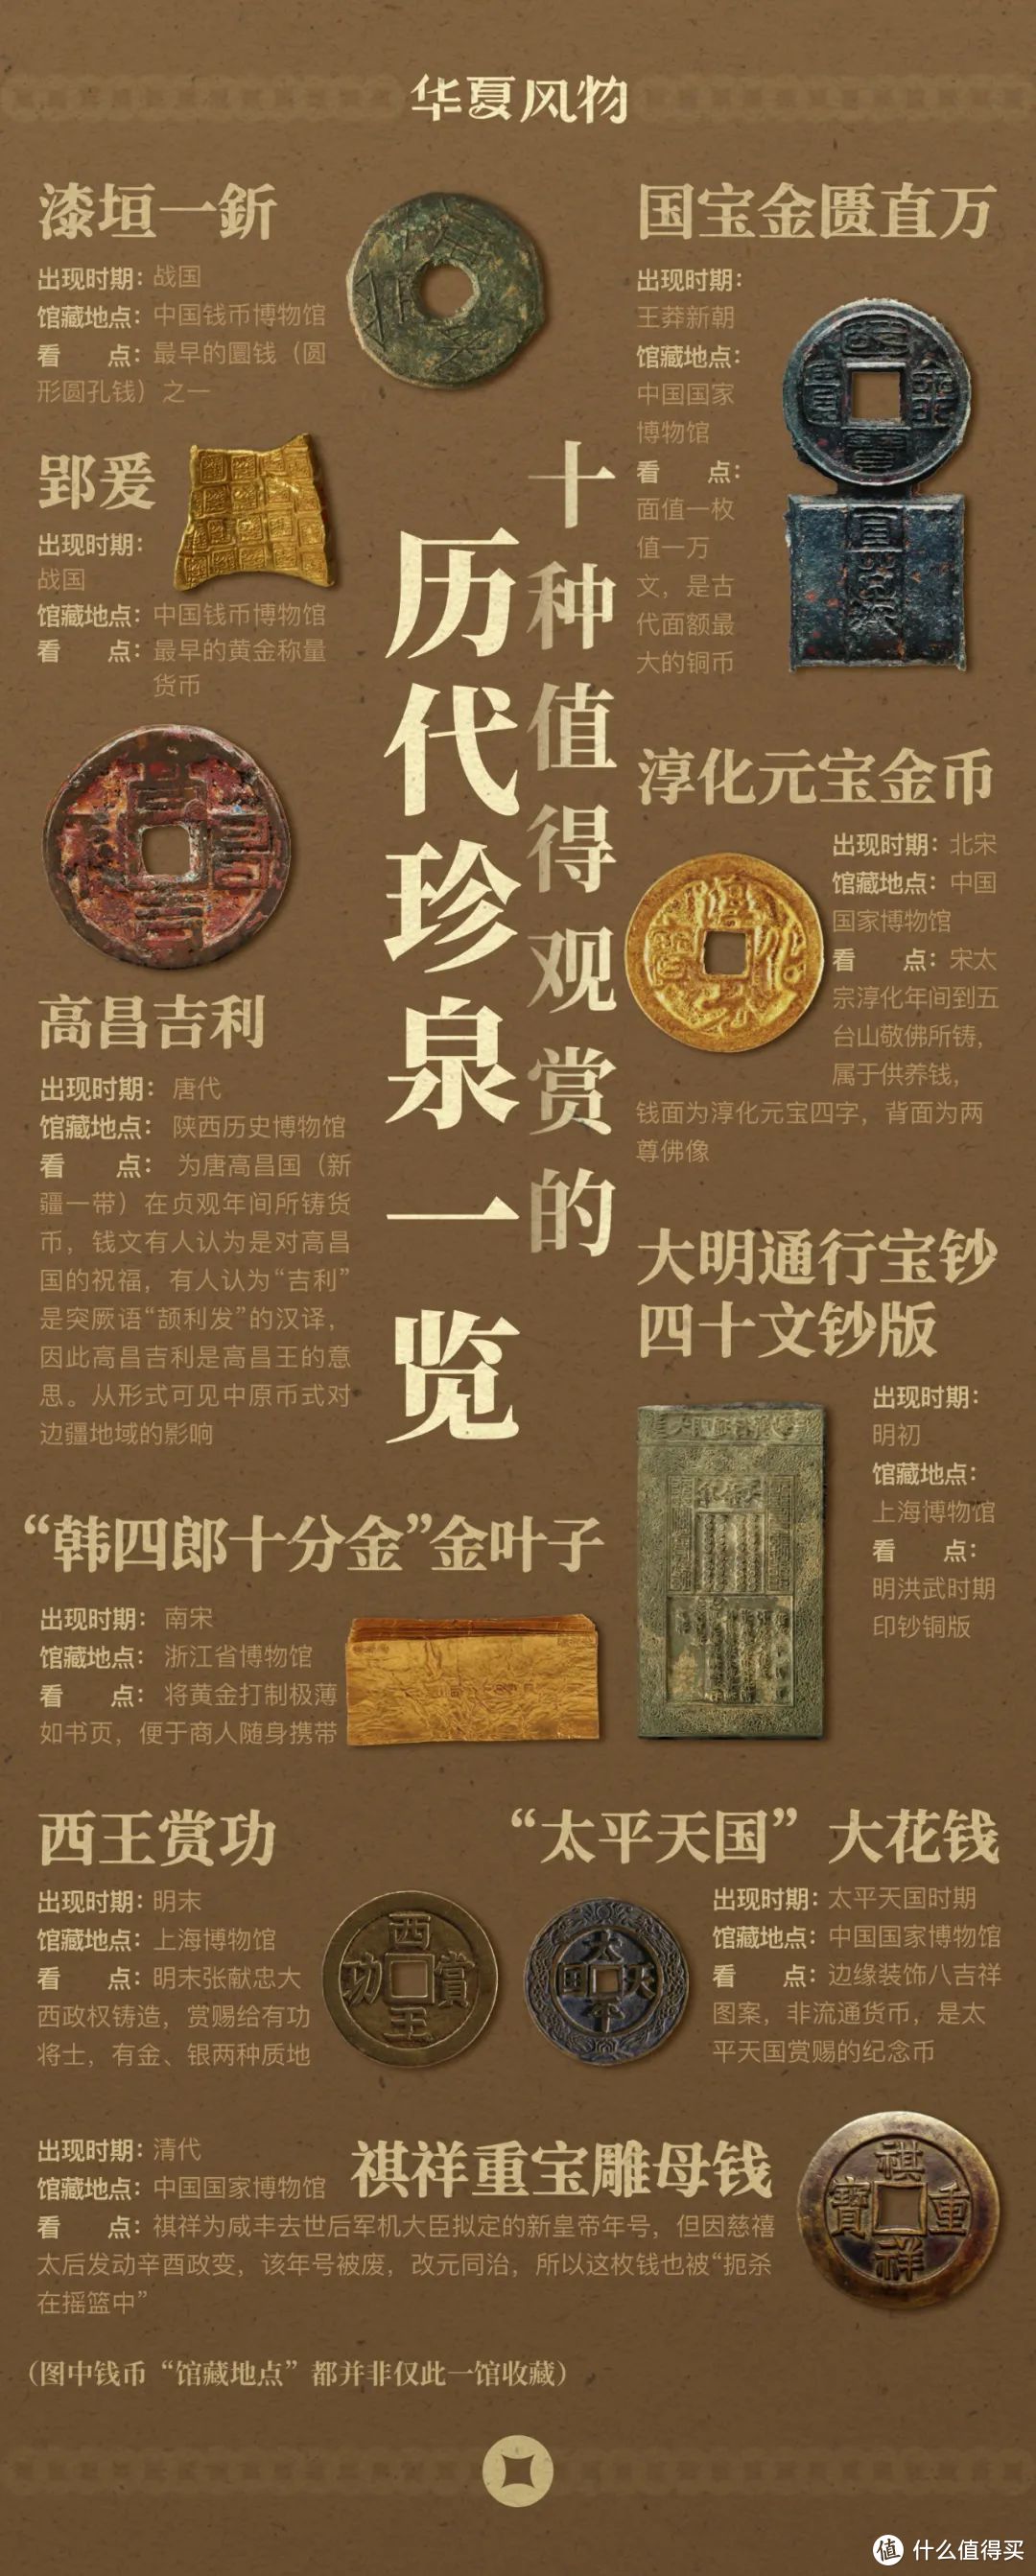 10种值得观赏的历代珍泉一览图 ©️华夏风物